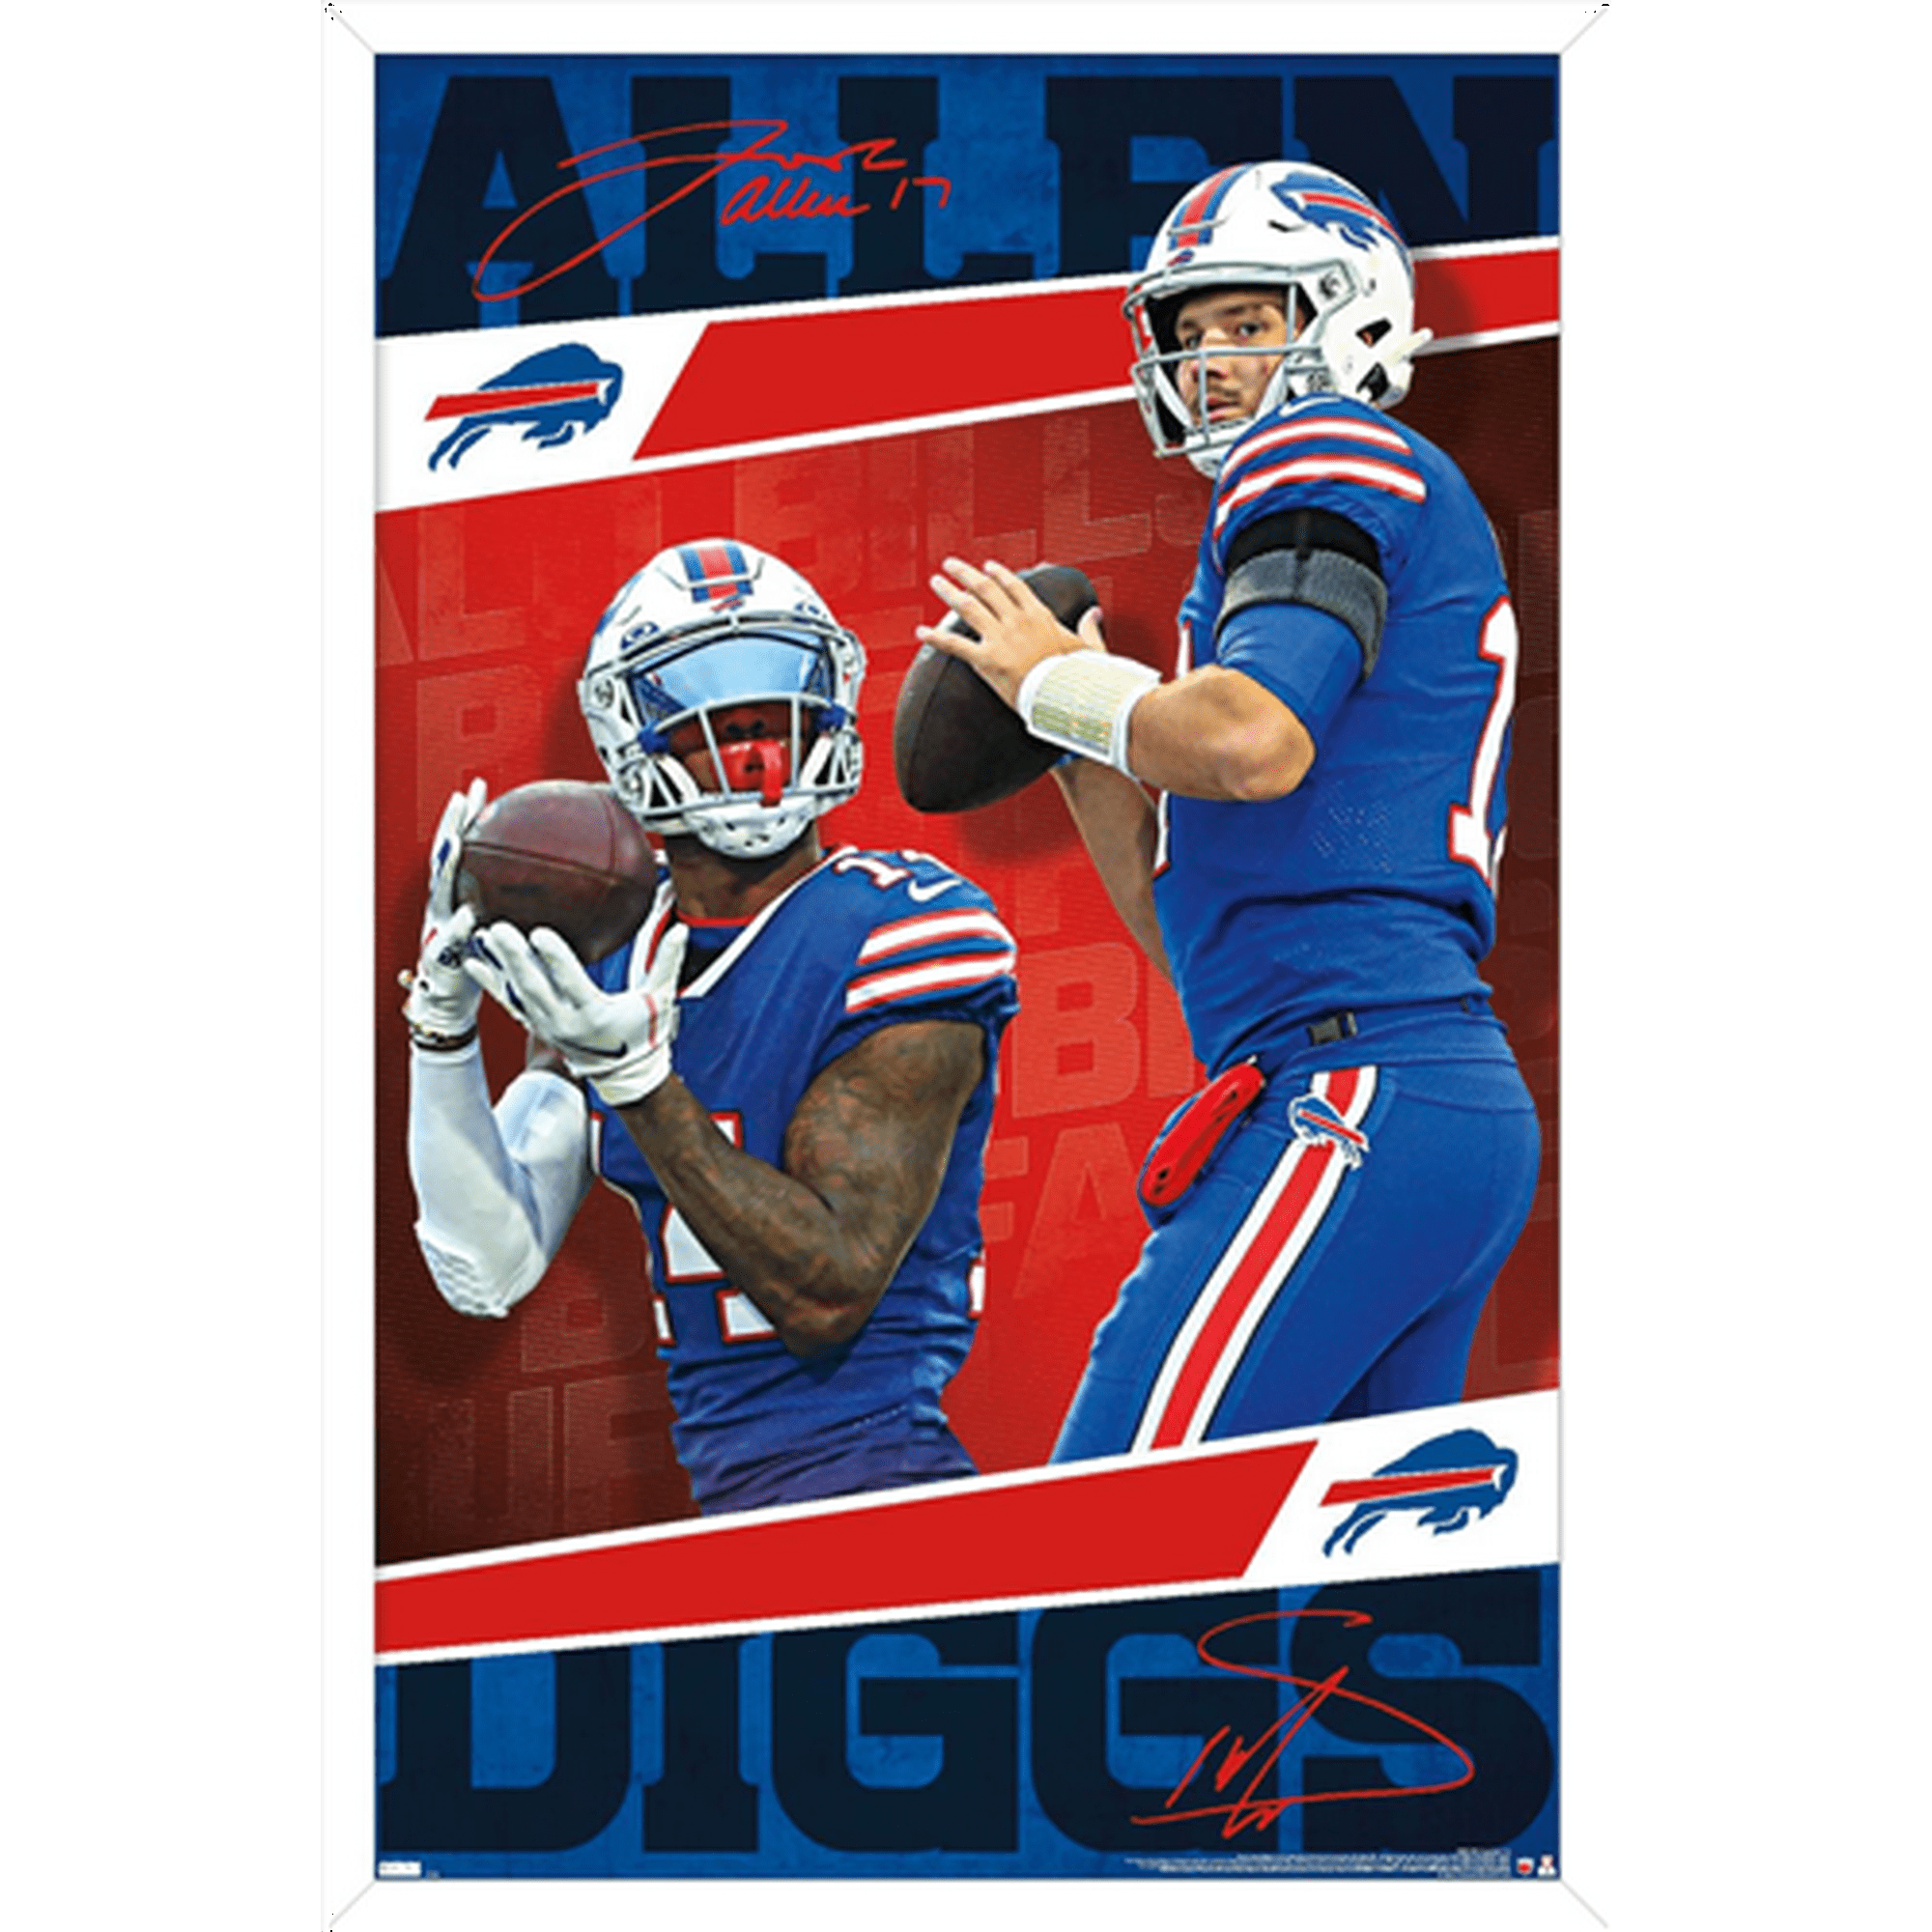 NFL Buffalo Bills - Josh Allen and Stefon Diggs 21 Wall Poster